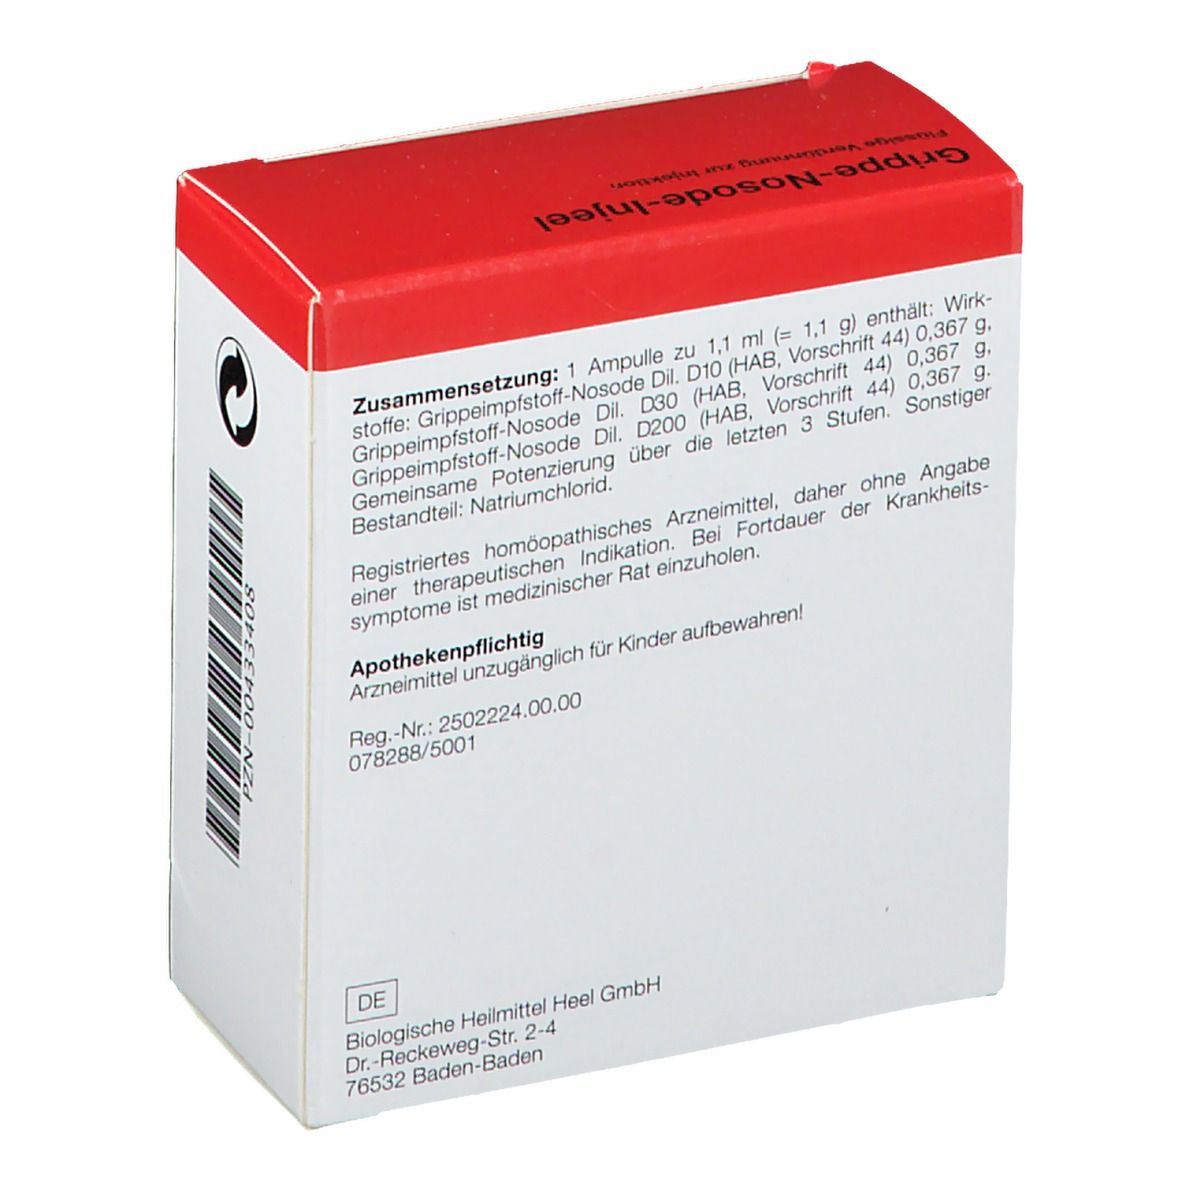 Grippe-Nosode-Injeel® Ampullen